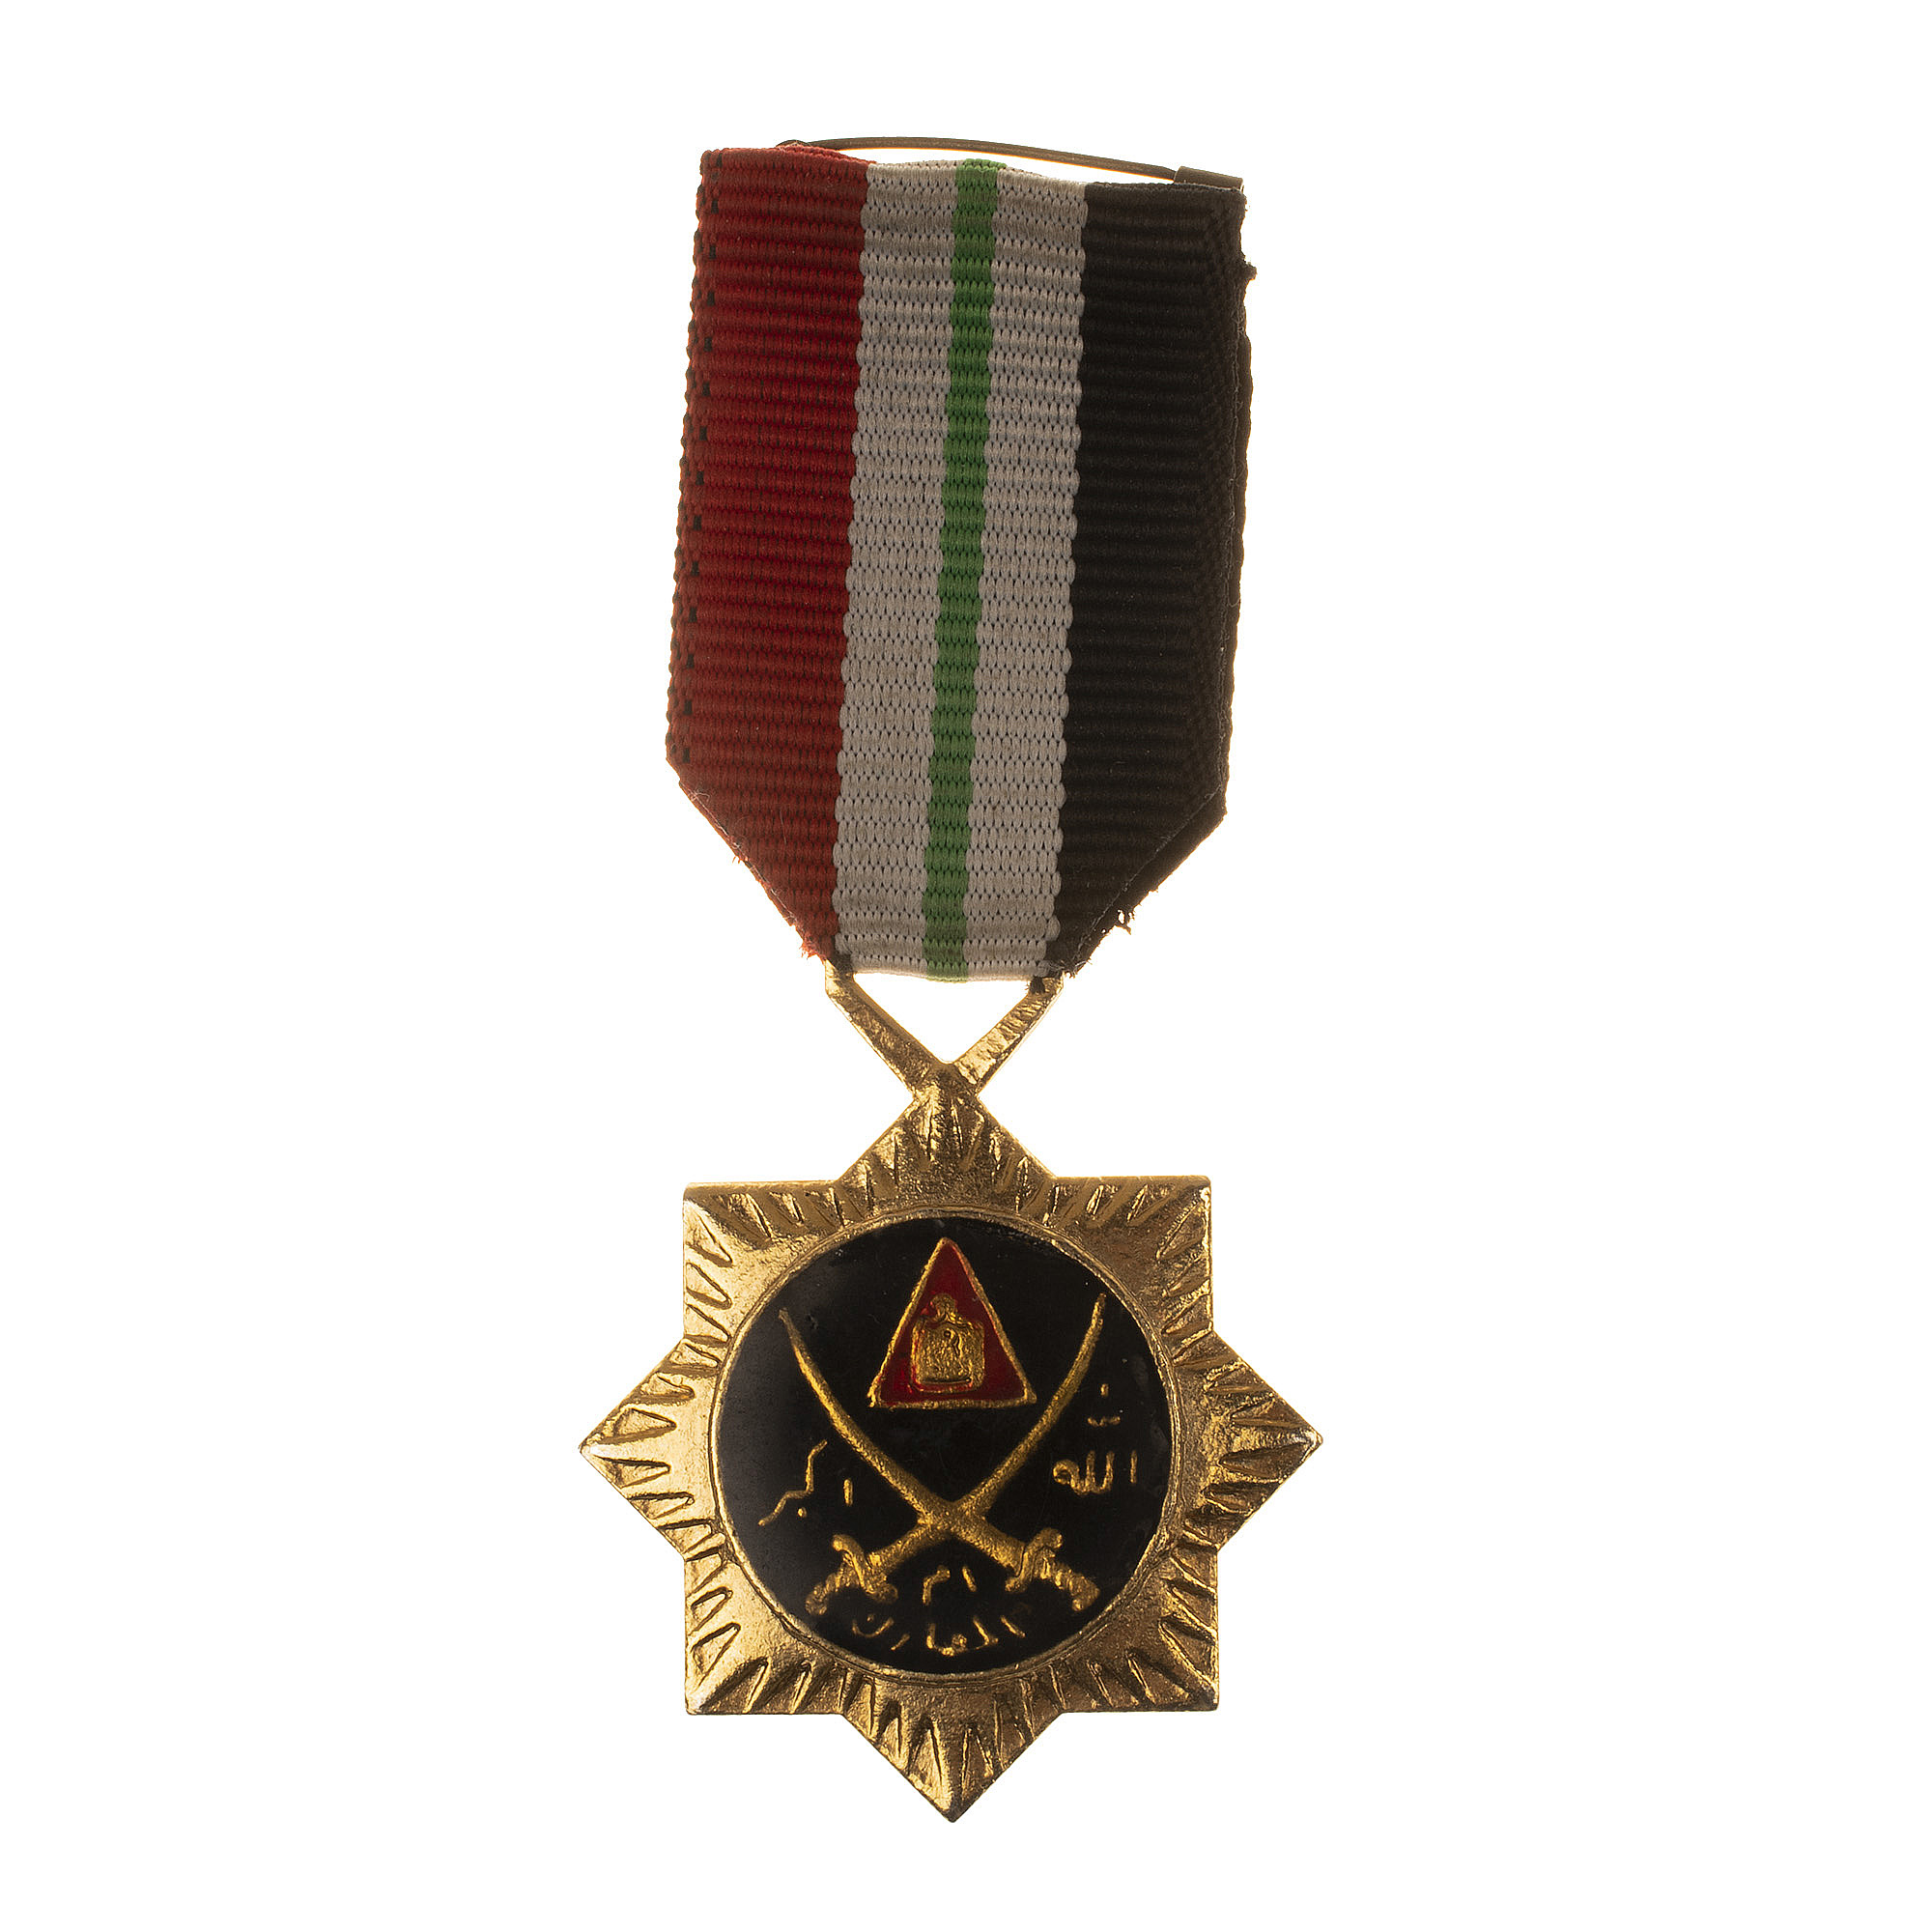 Ирак (Республика Ирак 1932 - 2022). Медаль "Мать сражений" (официальное название -  "Wissam ‘Uum al-M’aarak").